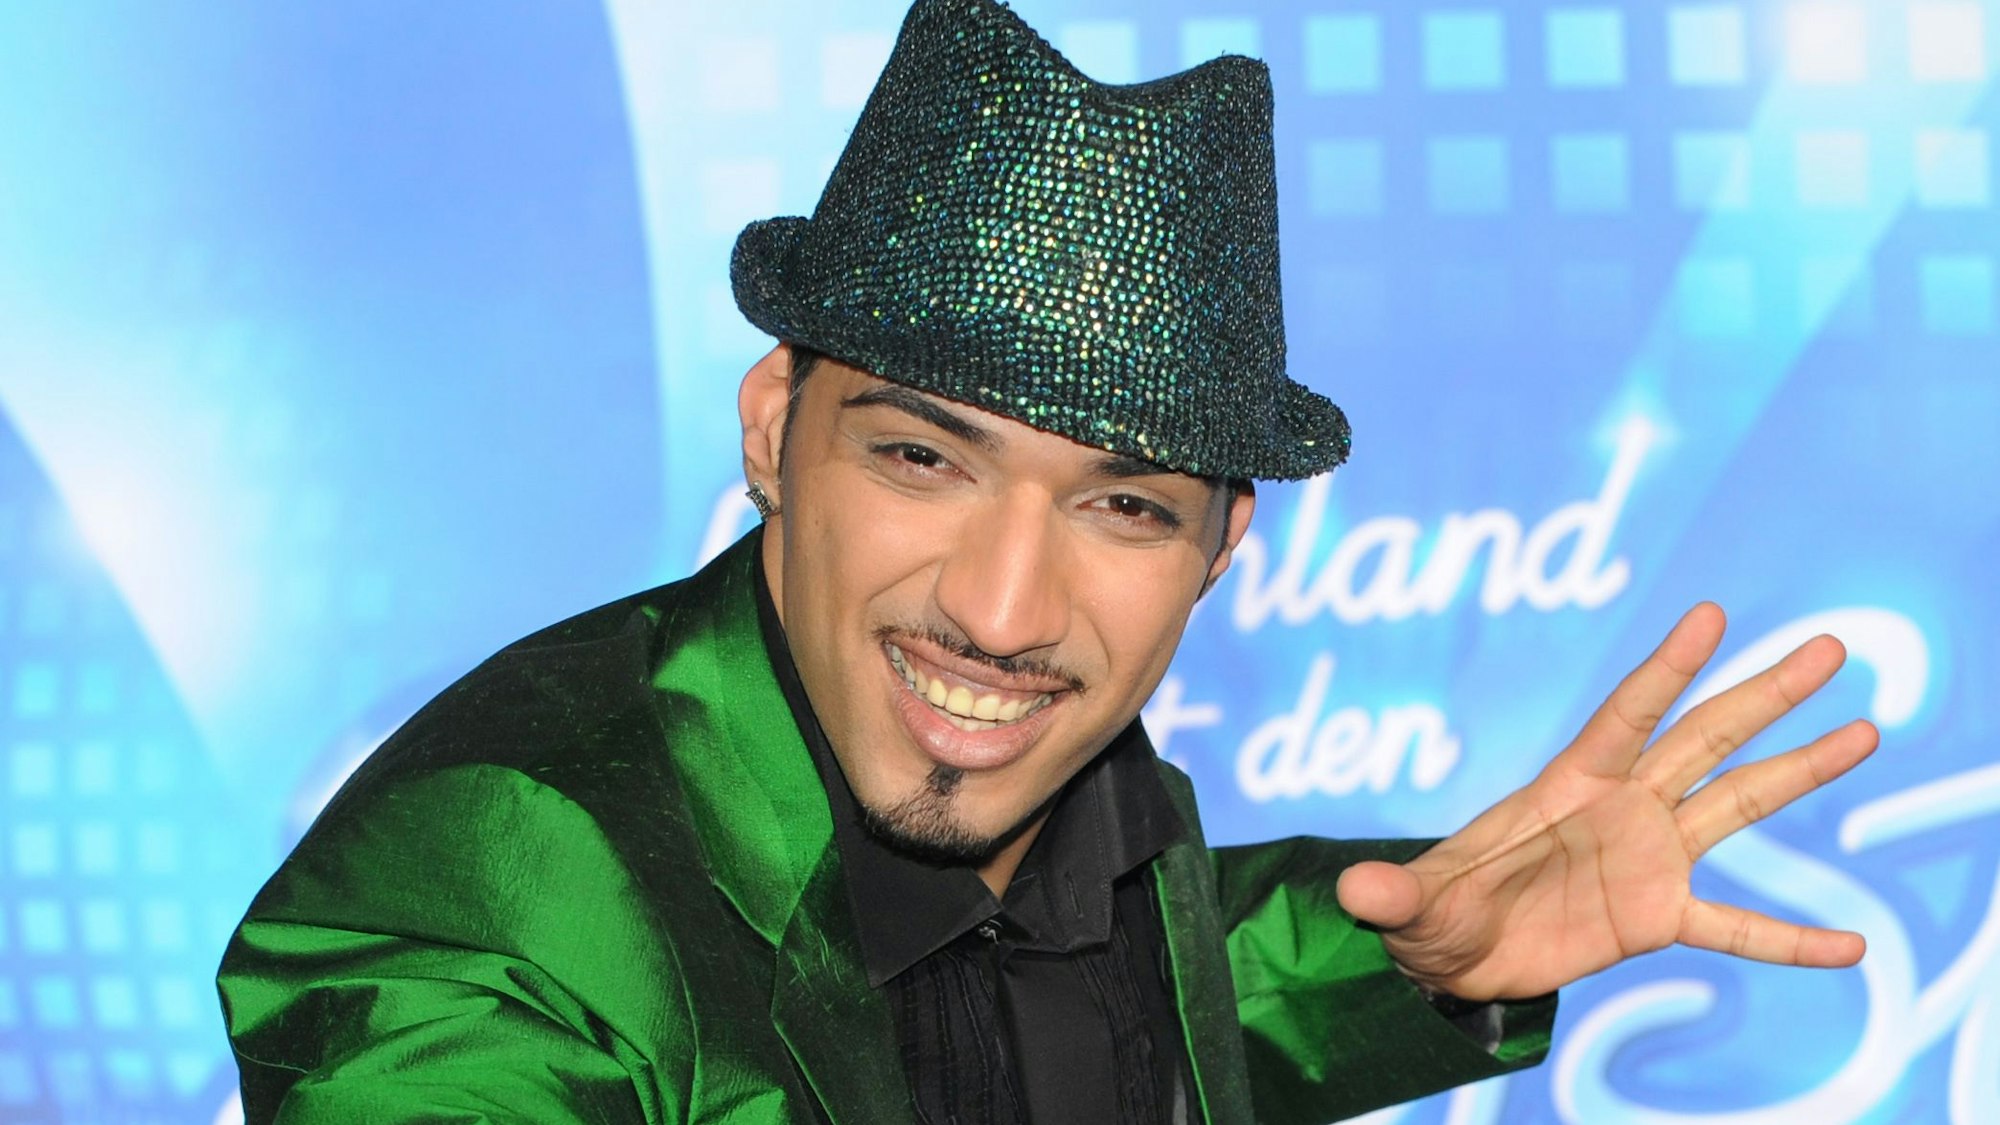 Der Kandidat Mehrzad Marashi posiert als Sieger nach dem Finale der RTL-Castingshow „Deutschland sucht den Superstar“ (DSDS) am 18.04.2010 in Köln auf der Bühne.